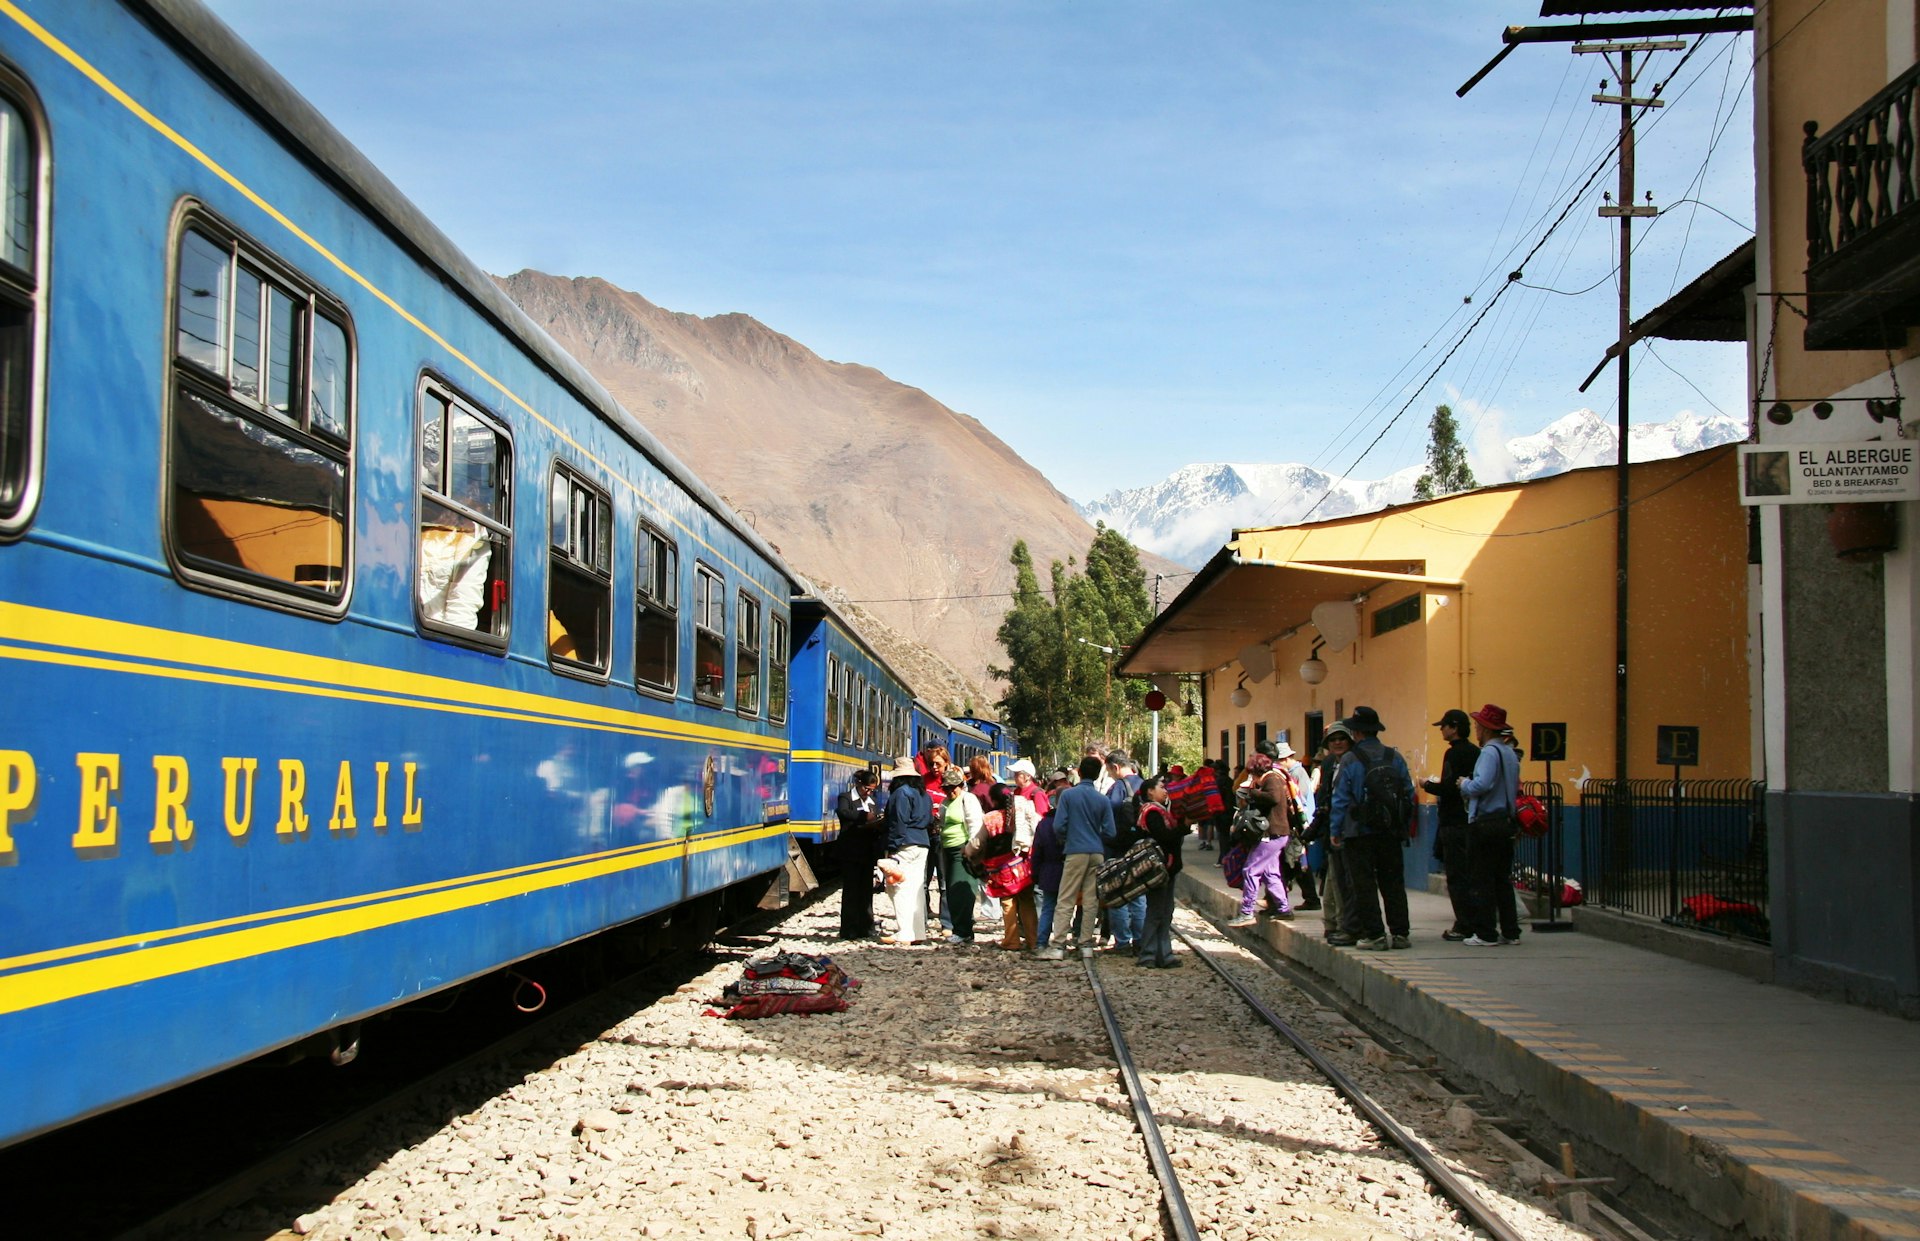 Passengers line up to board a blue train in the Machu Picchu city, Peru